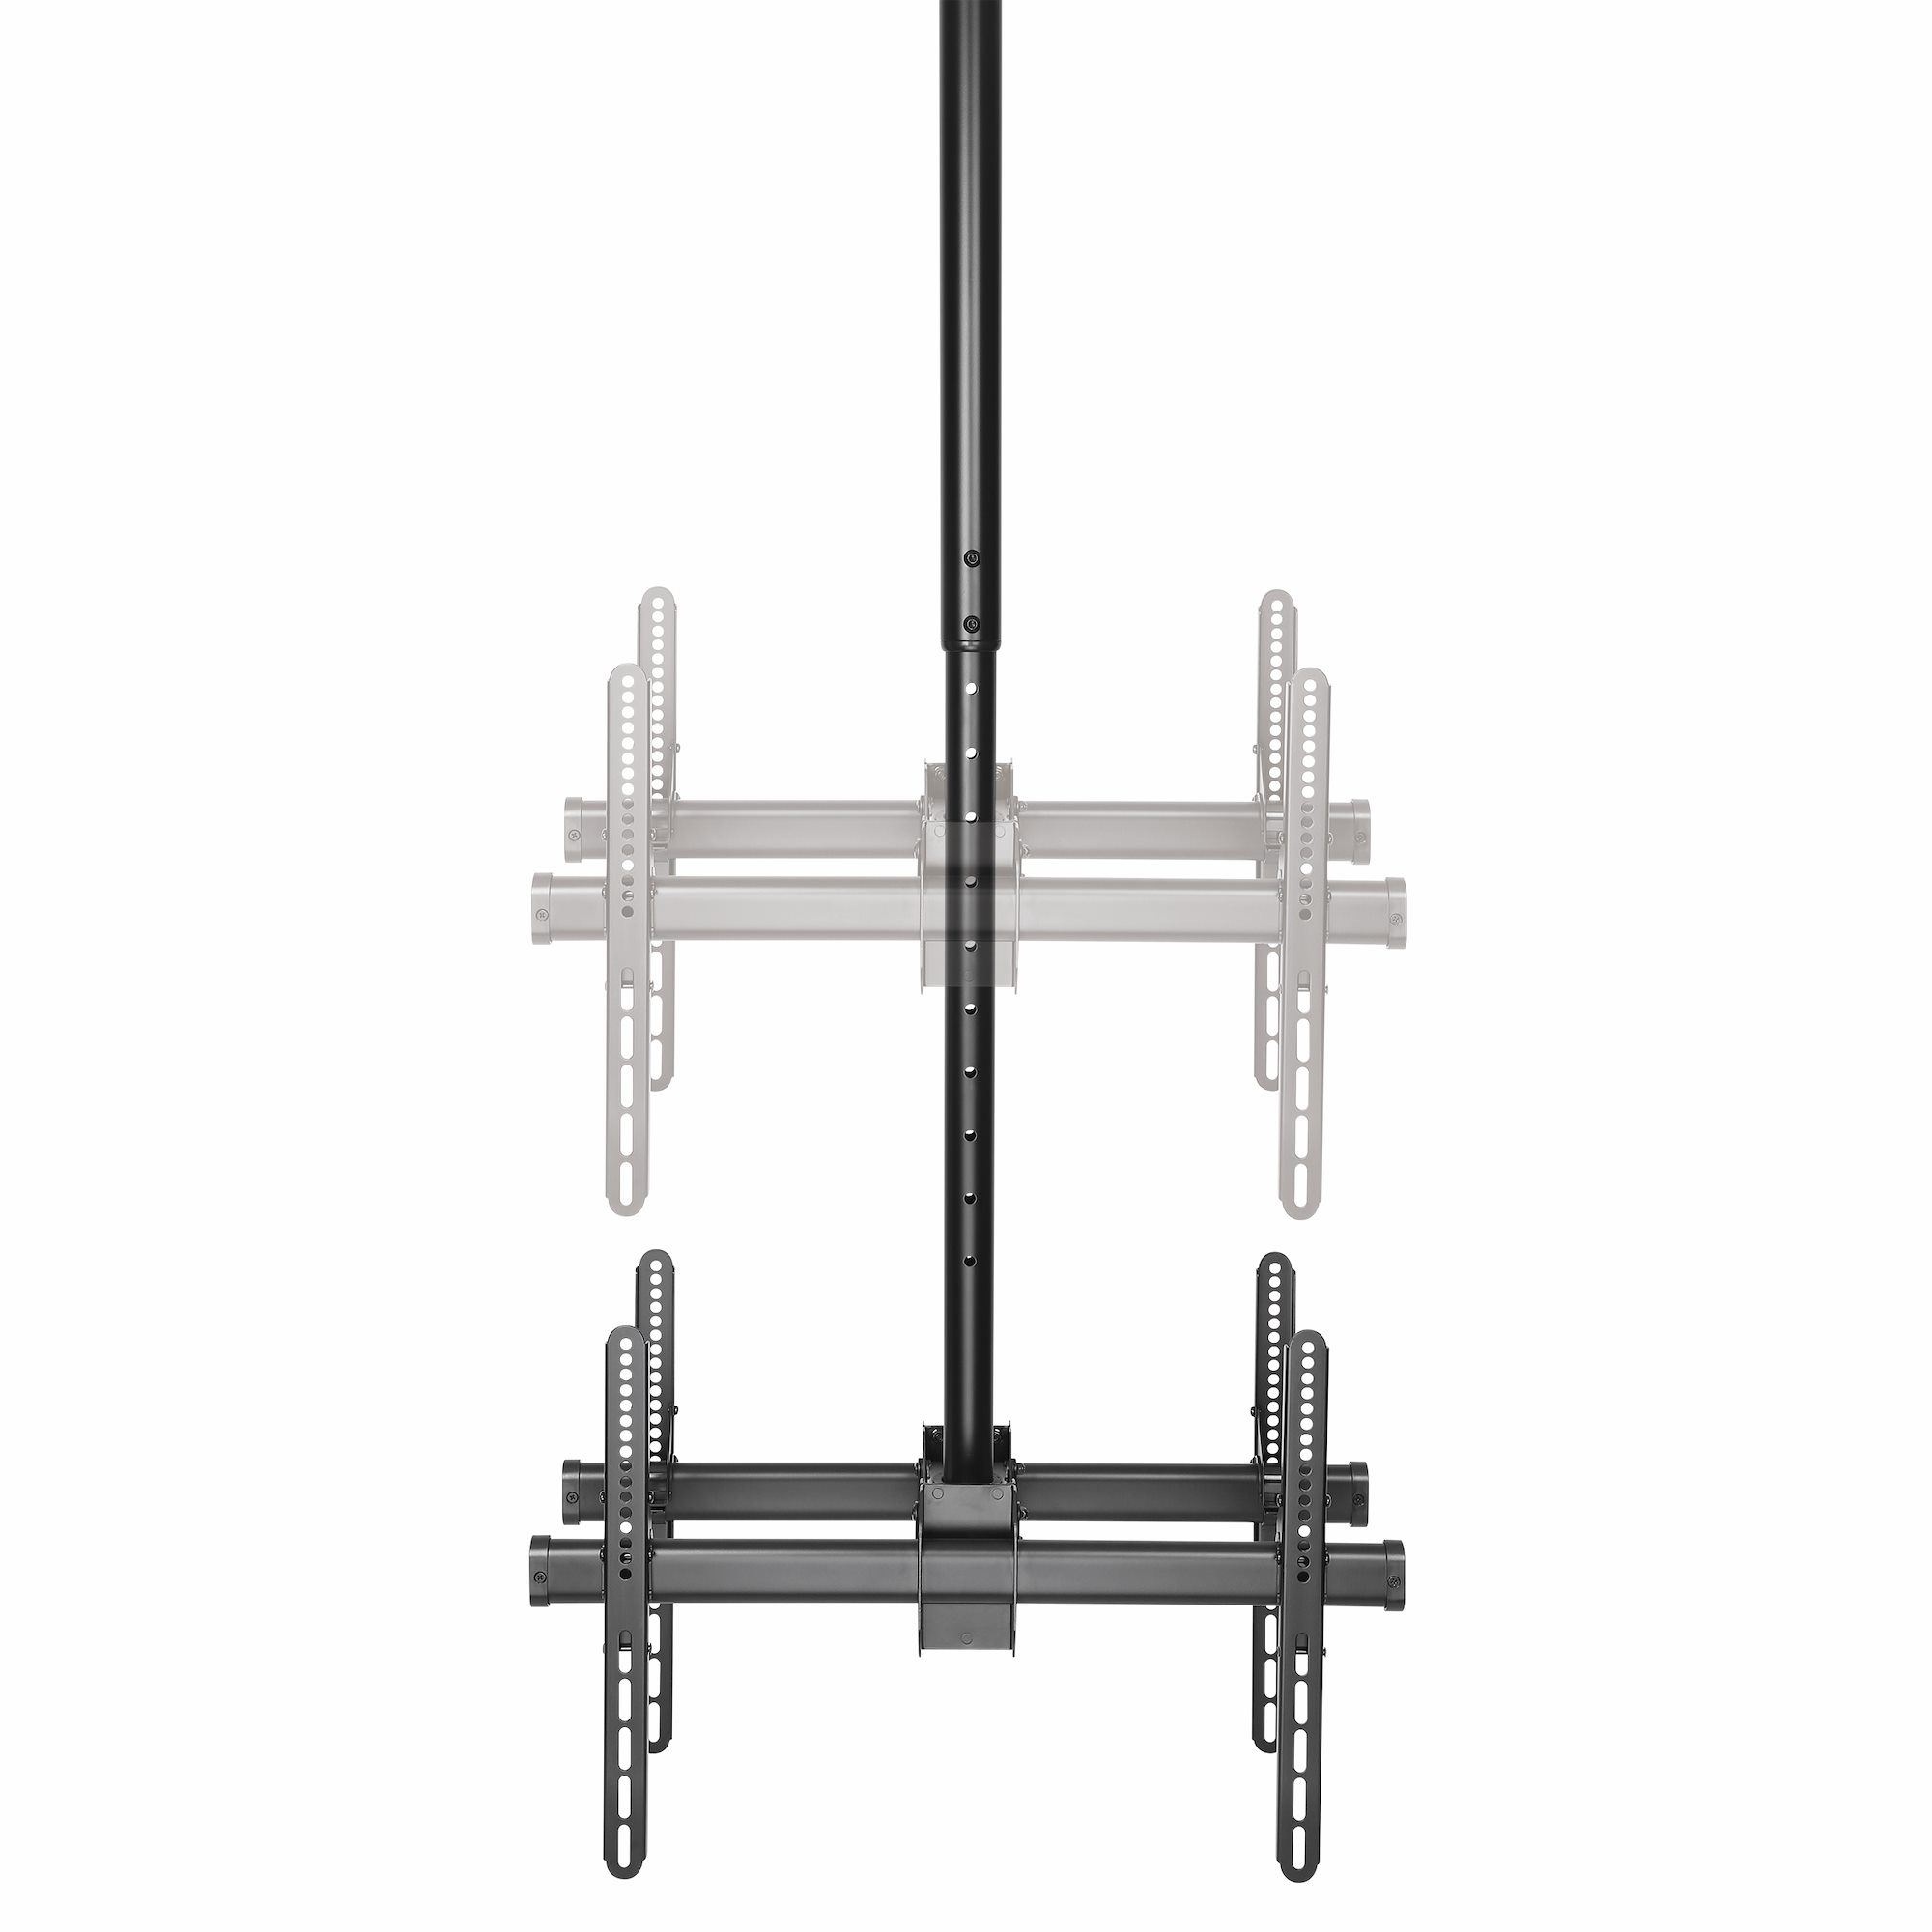 薄型テレビ天吊り金具 天井からの距離を2.5mから3mに調節 フルモーション 32- 75インチTV対応天吊りハンガ